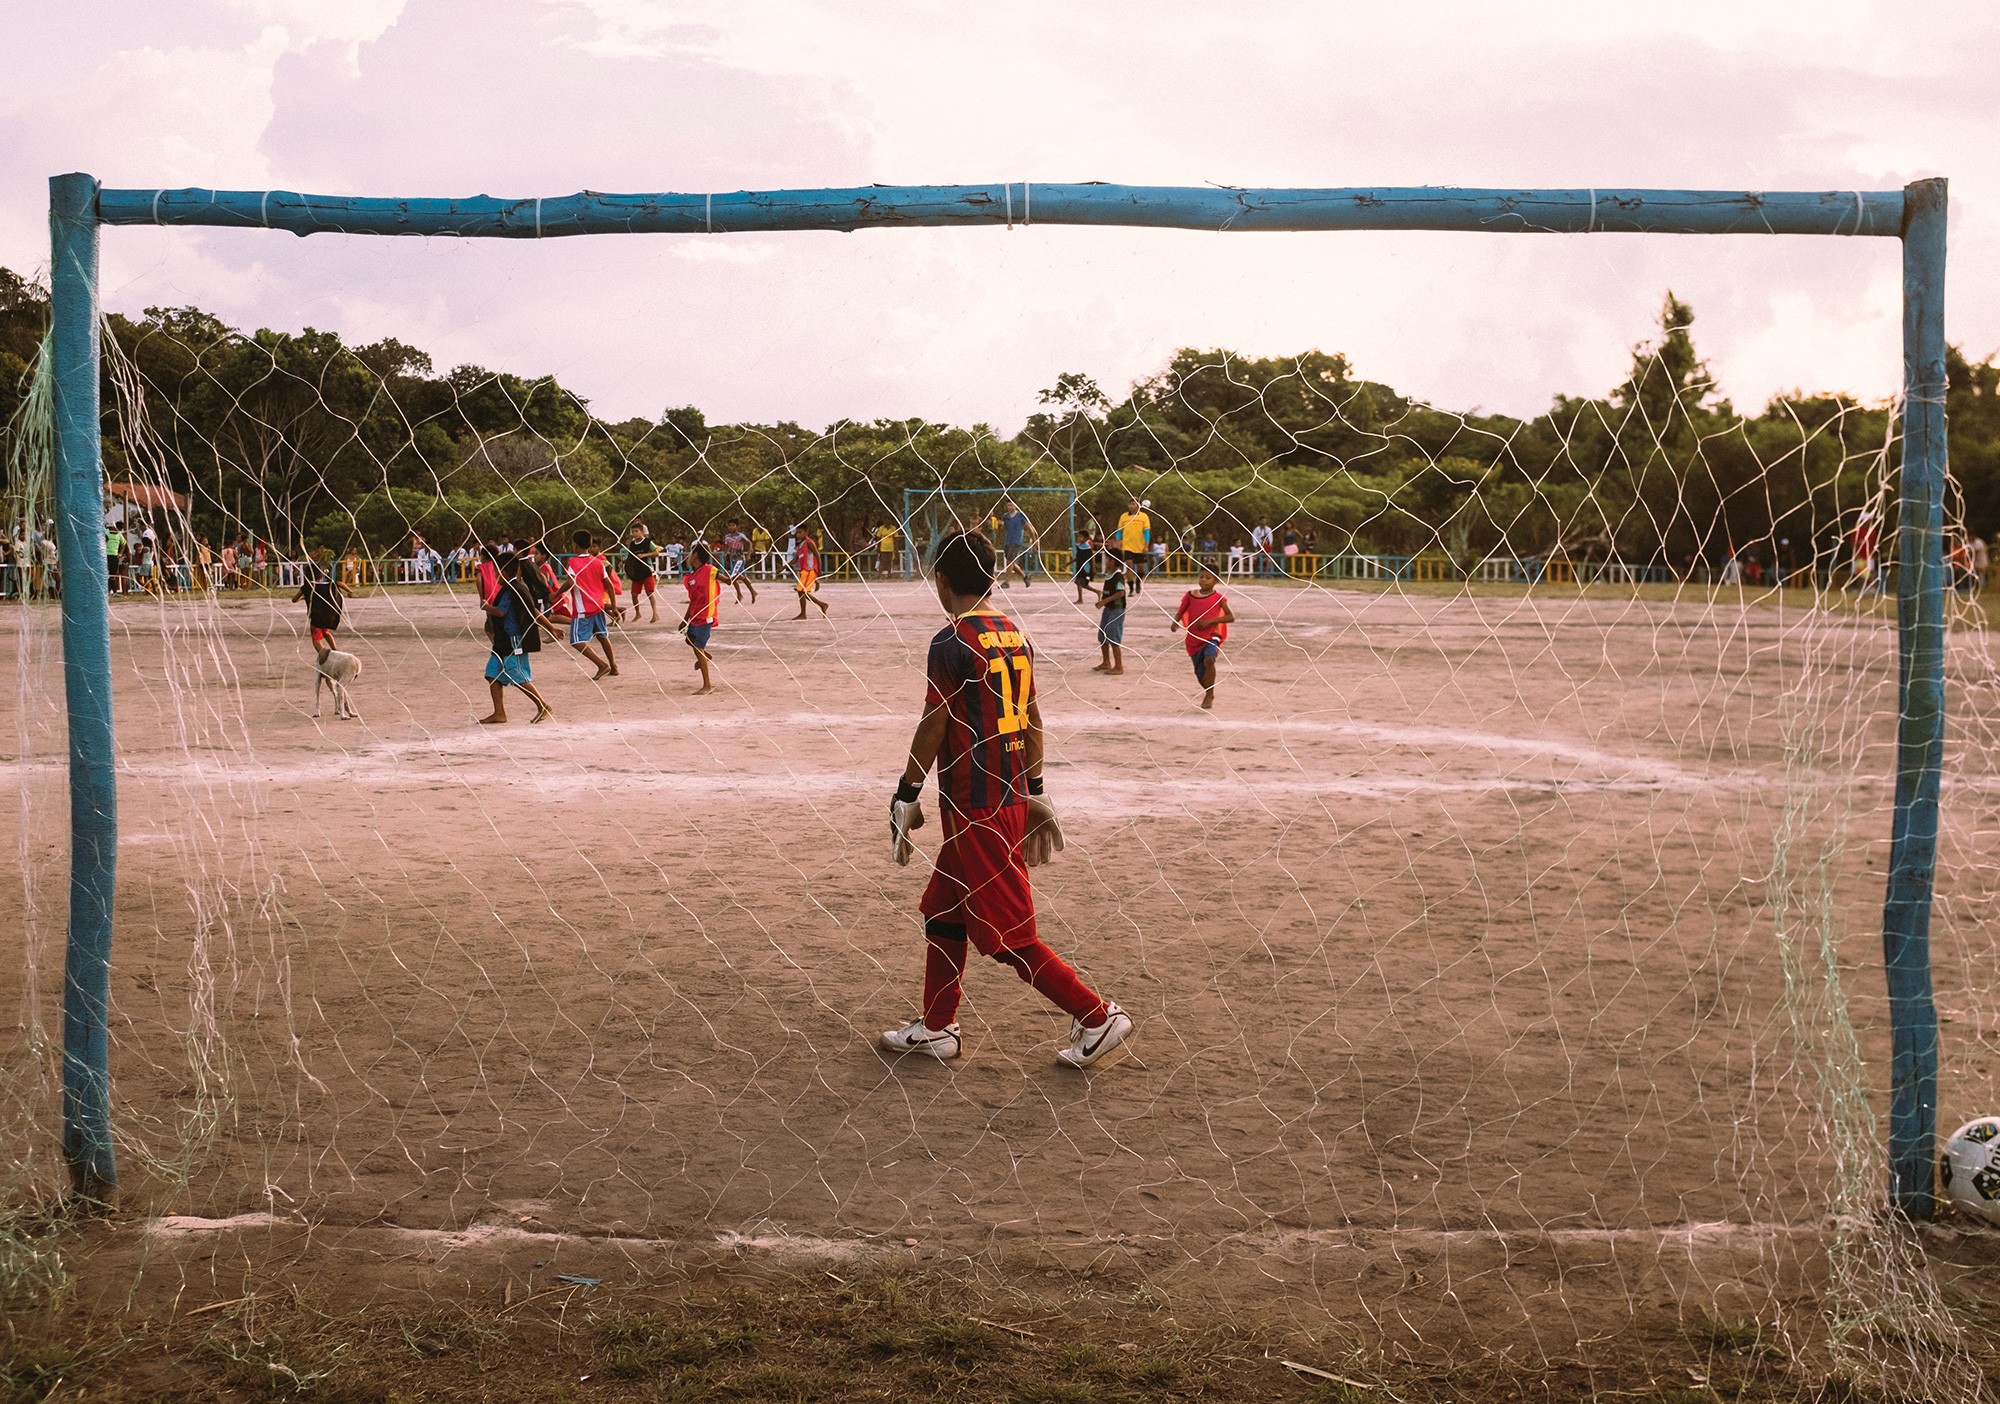 Responsabilidade Social: “Somos um guarda-chuva em que o futebol é o fio condutor”, explica Felipe Oliveira sobre a Ginga.Fc, que começou como uma marca de camisetas (Foto: divulgação)